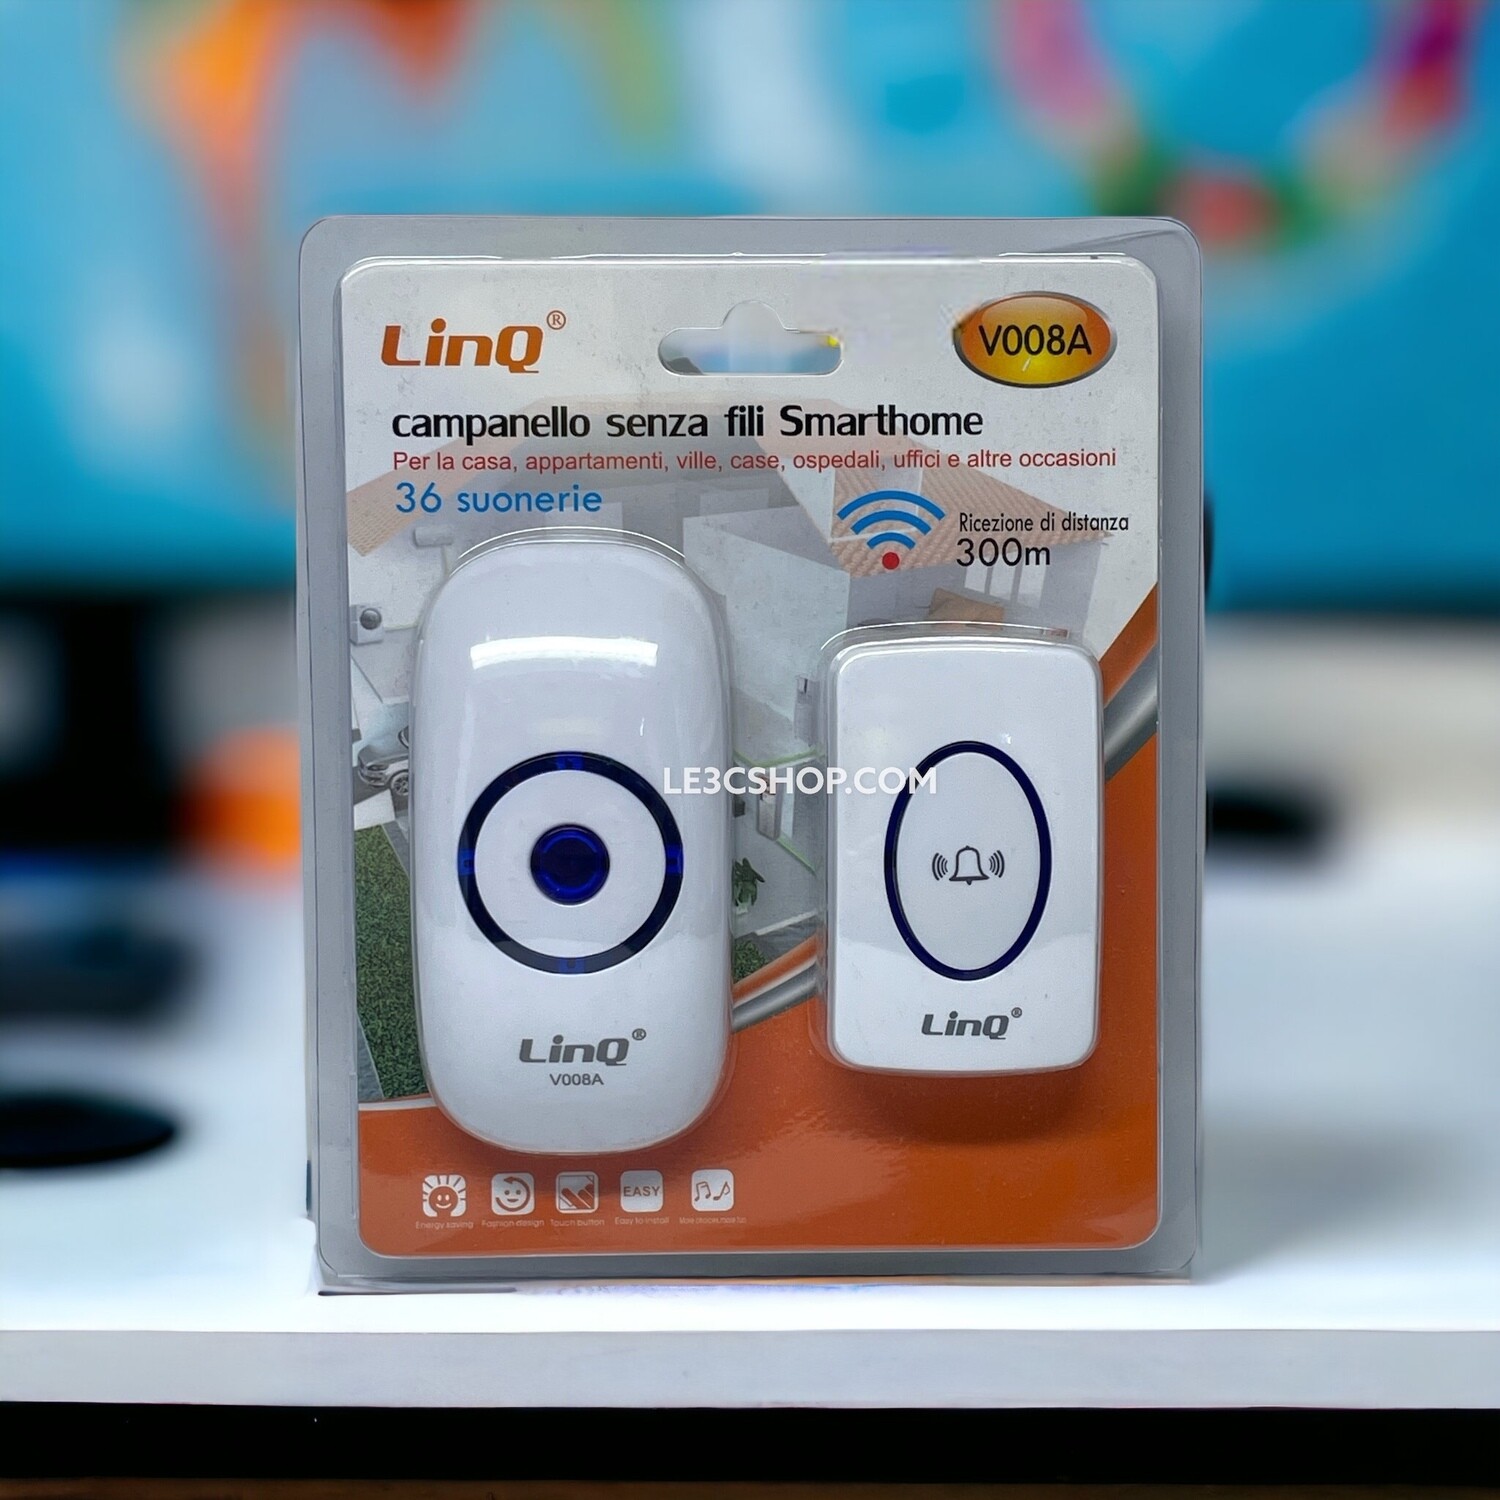 Campanello SmartHome LINQ V008A: Wireless, Suono Nitido e Versatile per Interni ed Esterni